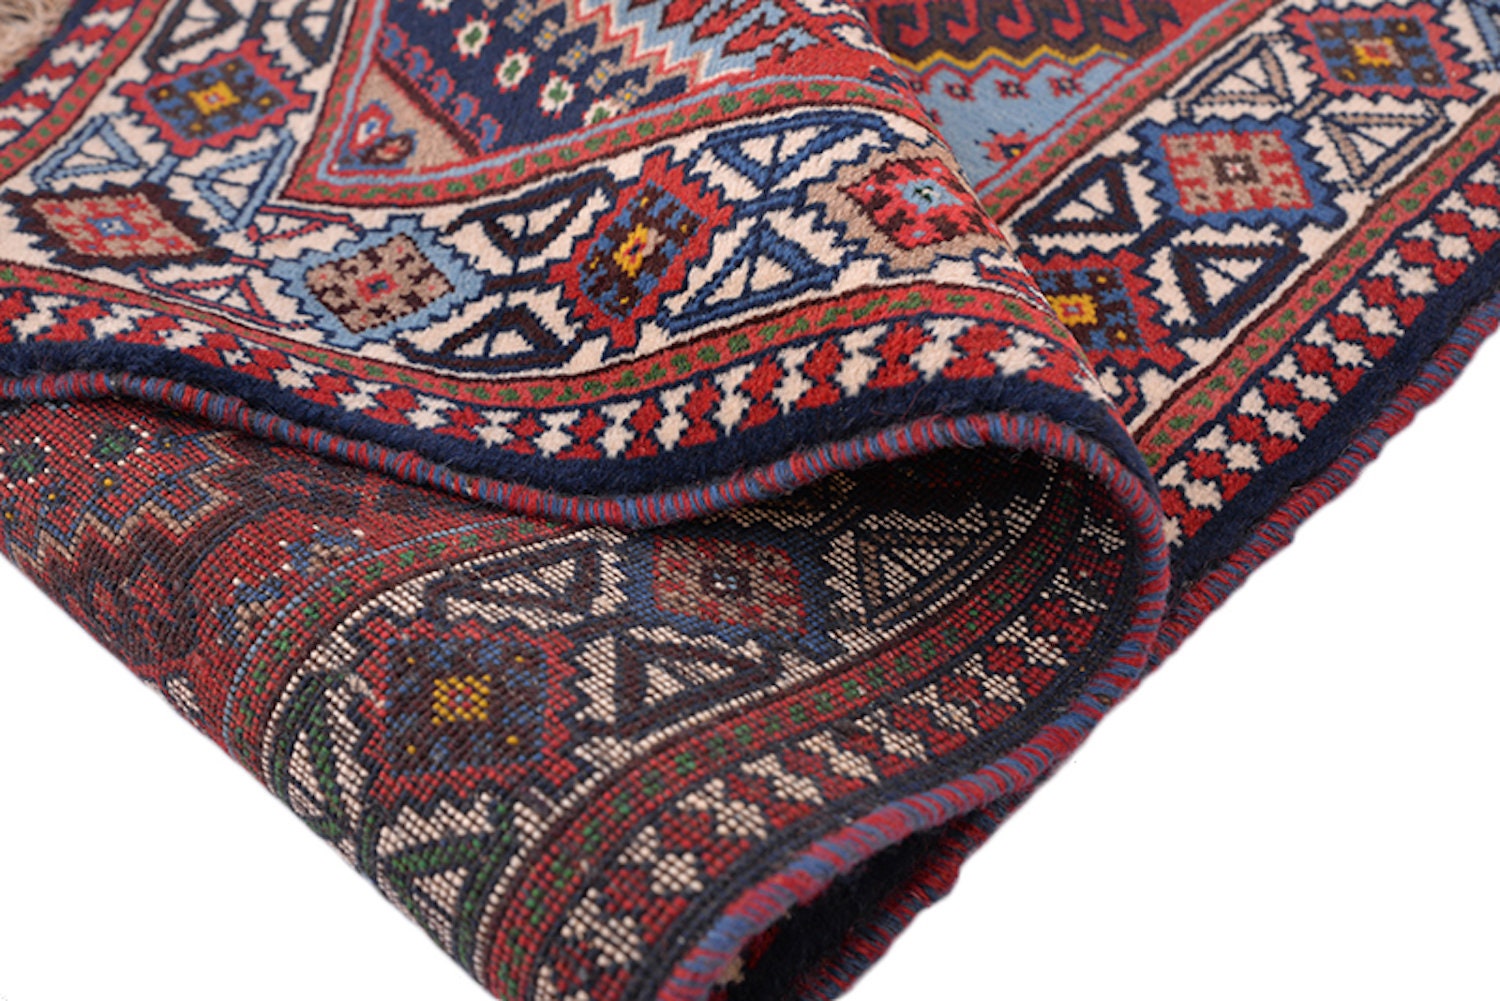 Vintage Tribal Rug | Pink Blue Rug | Afghan Persian Rug | Diamond Pattern Rug | 3 x 5 Feet | Wool Handmade Rug